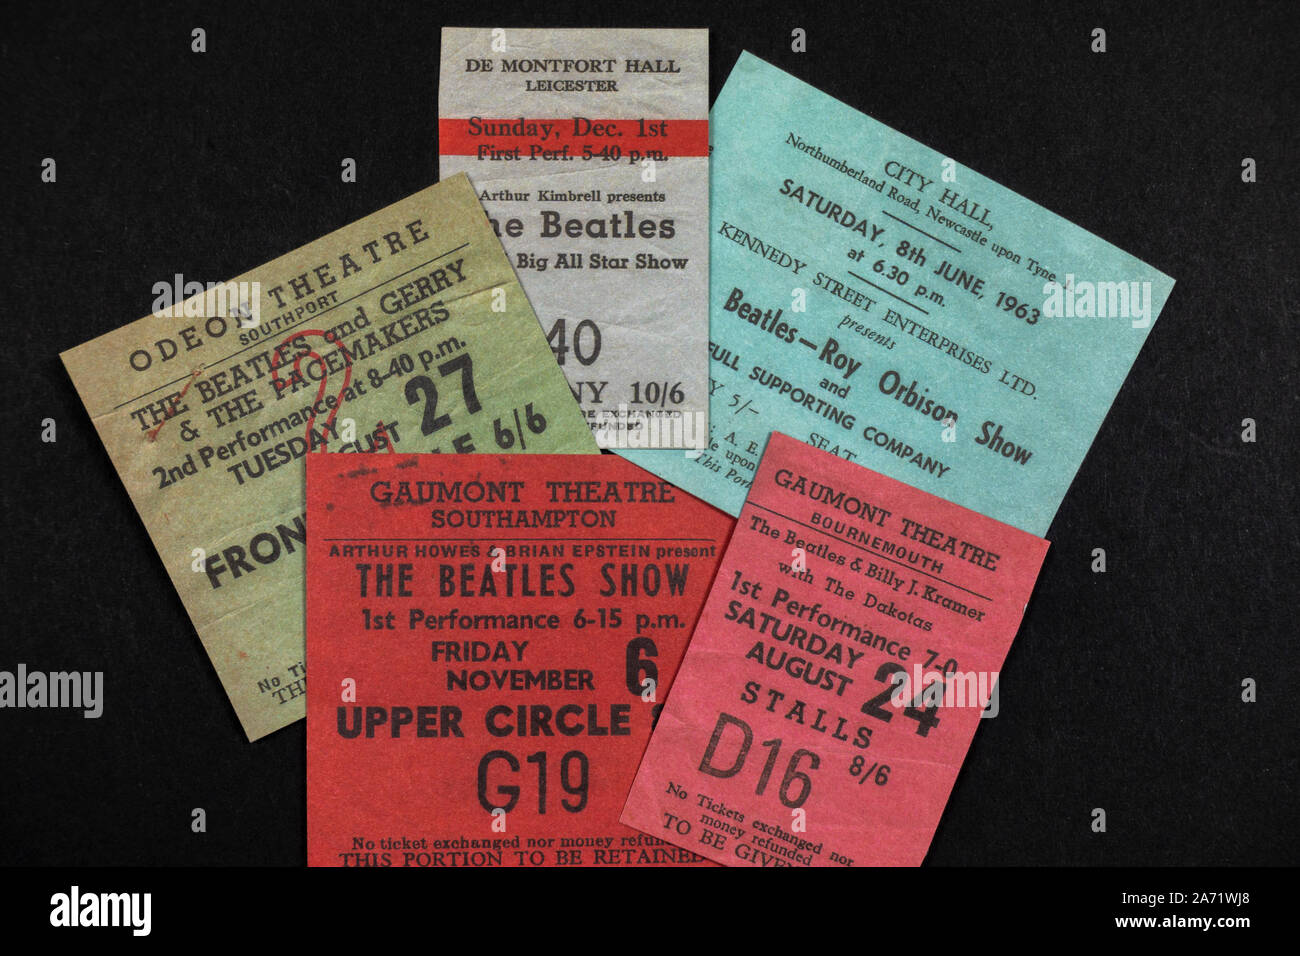 Replica Erinnerungsstücke über die Beatles: Eine Auswahl von Konzertkarten für unterschiedliche Auftritte der Beatles in den frühen 1960er Jahren. Stockfoto